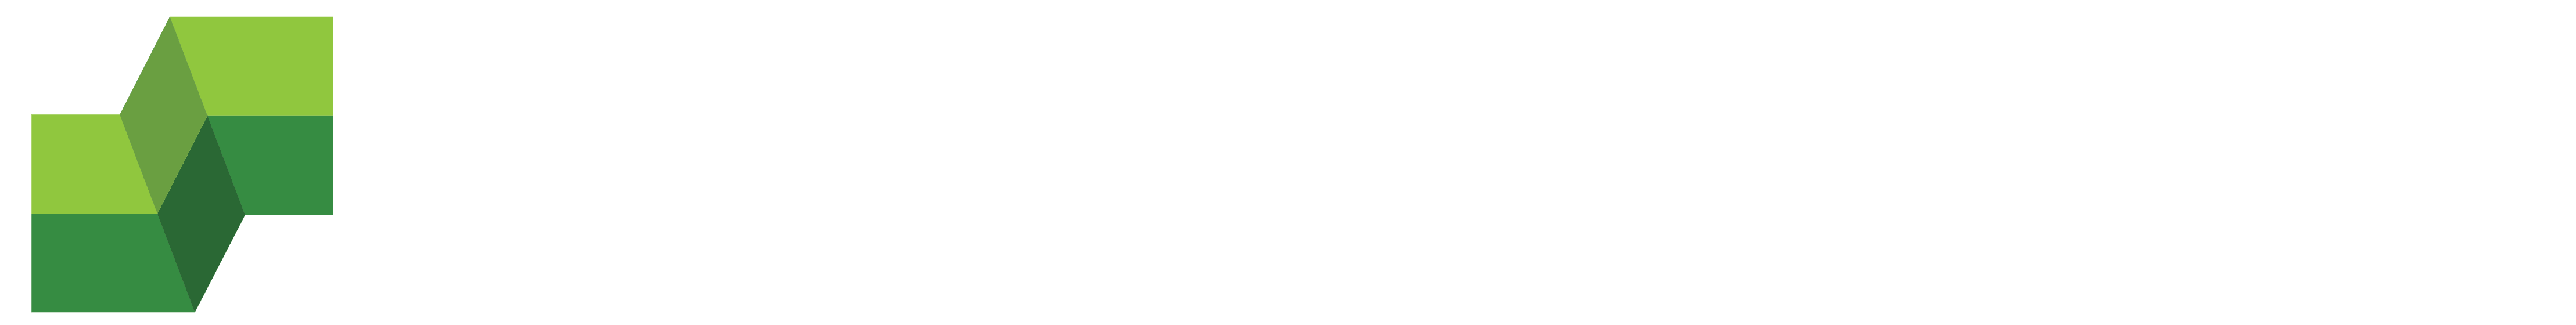 S&S Landscape, Inc. Logo